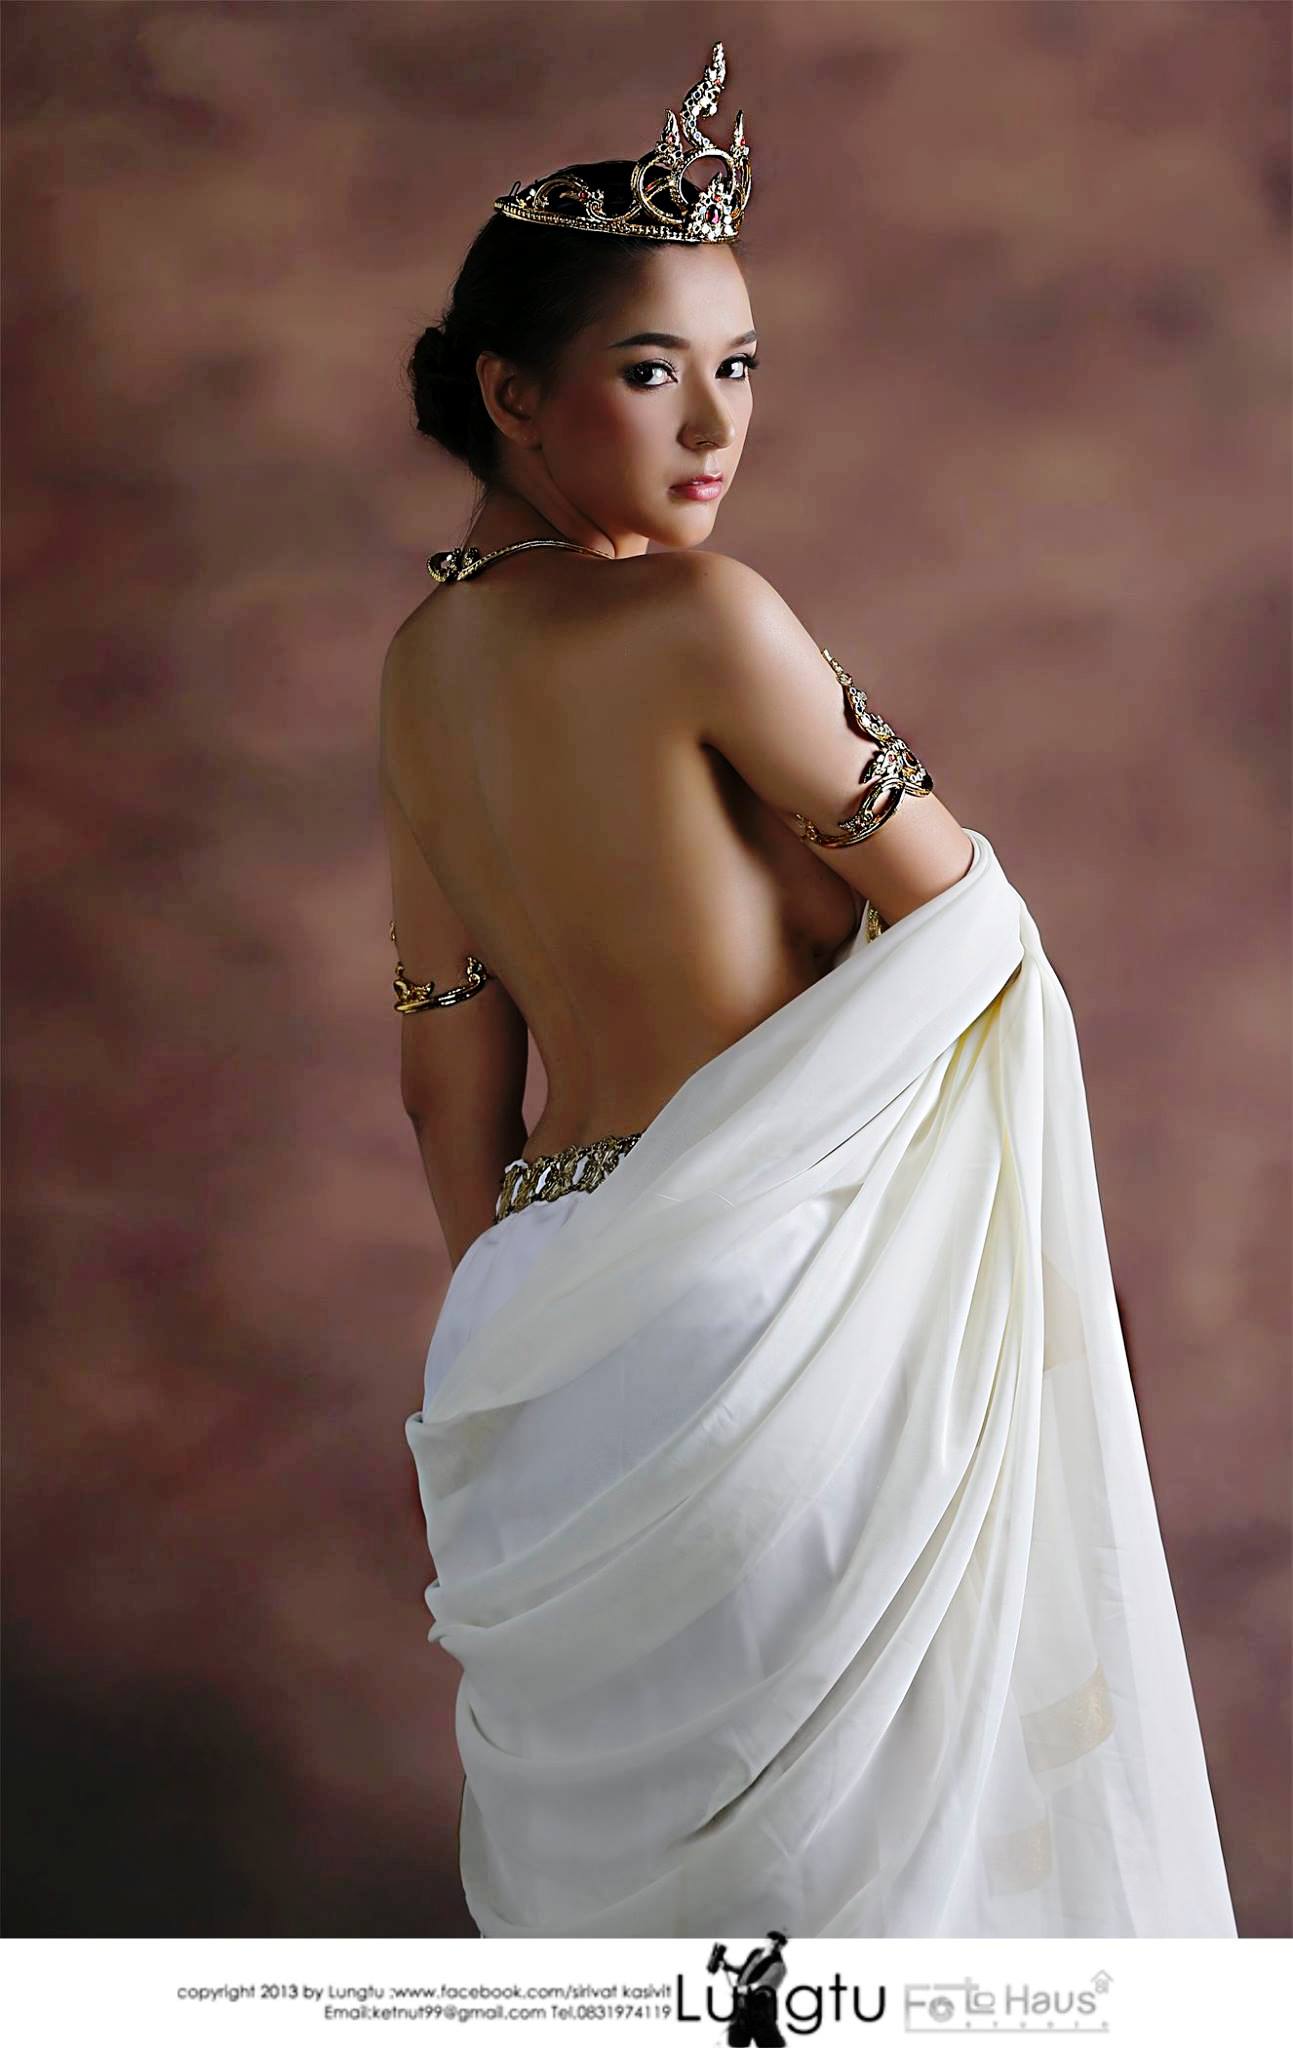 Napasorn-Sudsai-aka-Jenny-Lomdaw-by-shopbeo.com-031 Thai model Napasorn Sudsai aka Jenny Lomdaw nude sexy photos leaked  